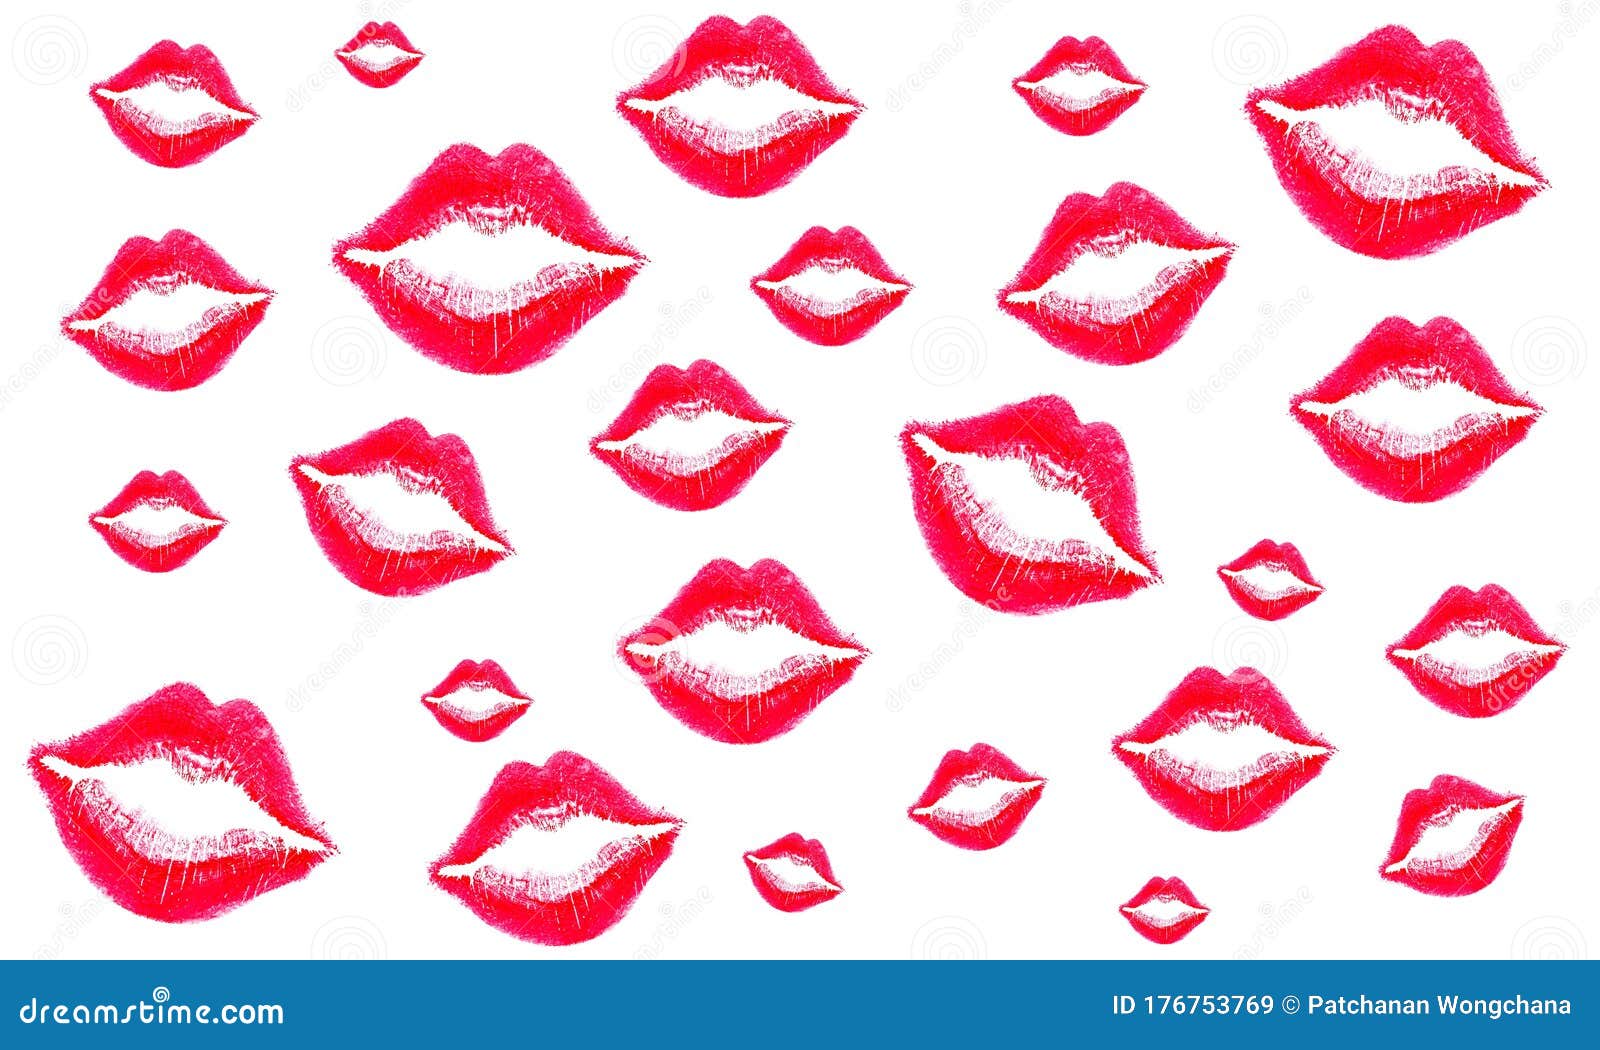 女式唇套白背景中不同颜色女性的唇印 吻唇 女孩嘴彩绘图案库存例证 插画包括有模式 激情